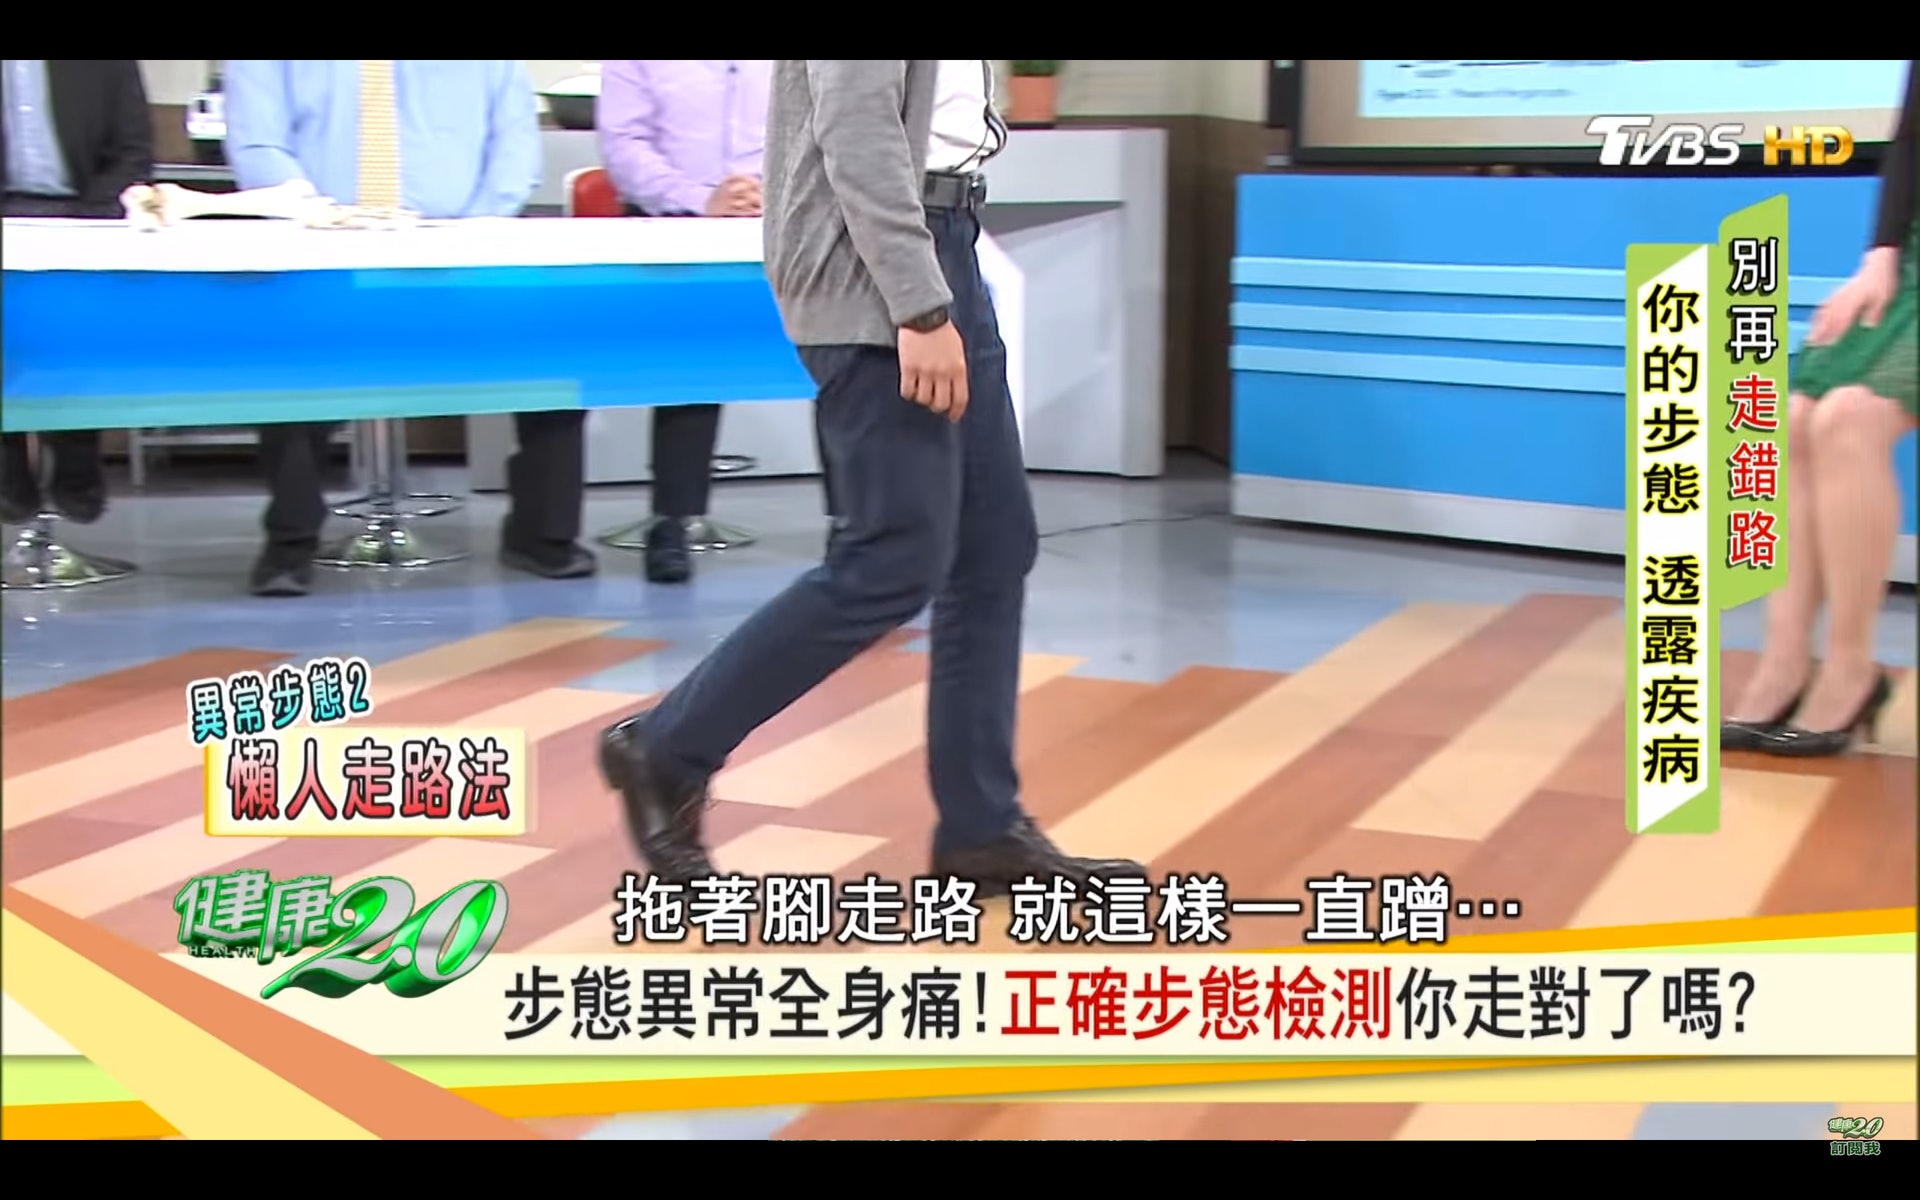 腳無法跨出去，行路拖著腳走（台灣TVBS頻道《健康2.0》截圖）